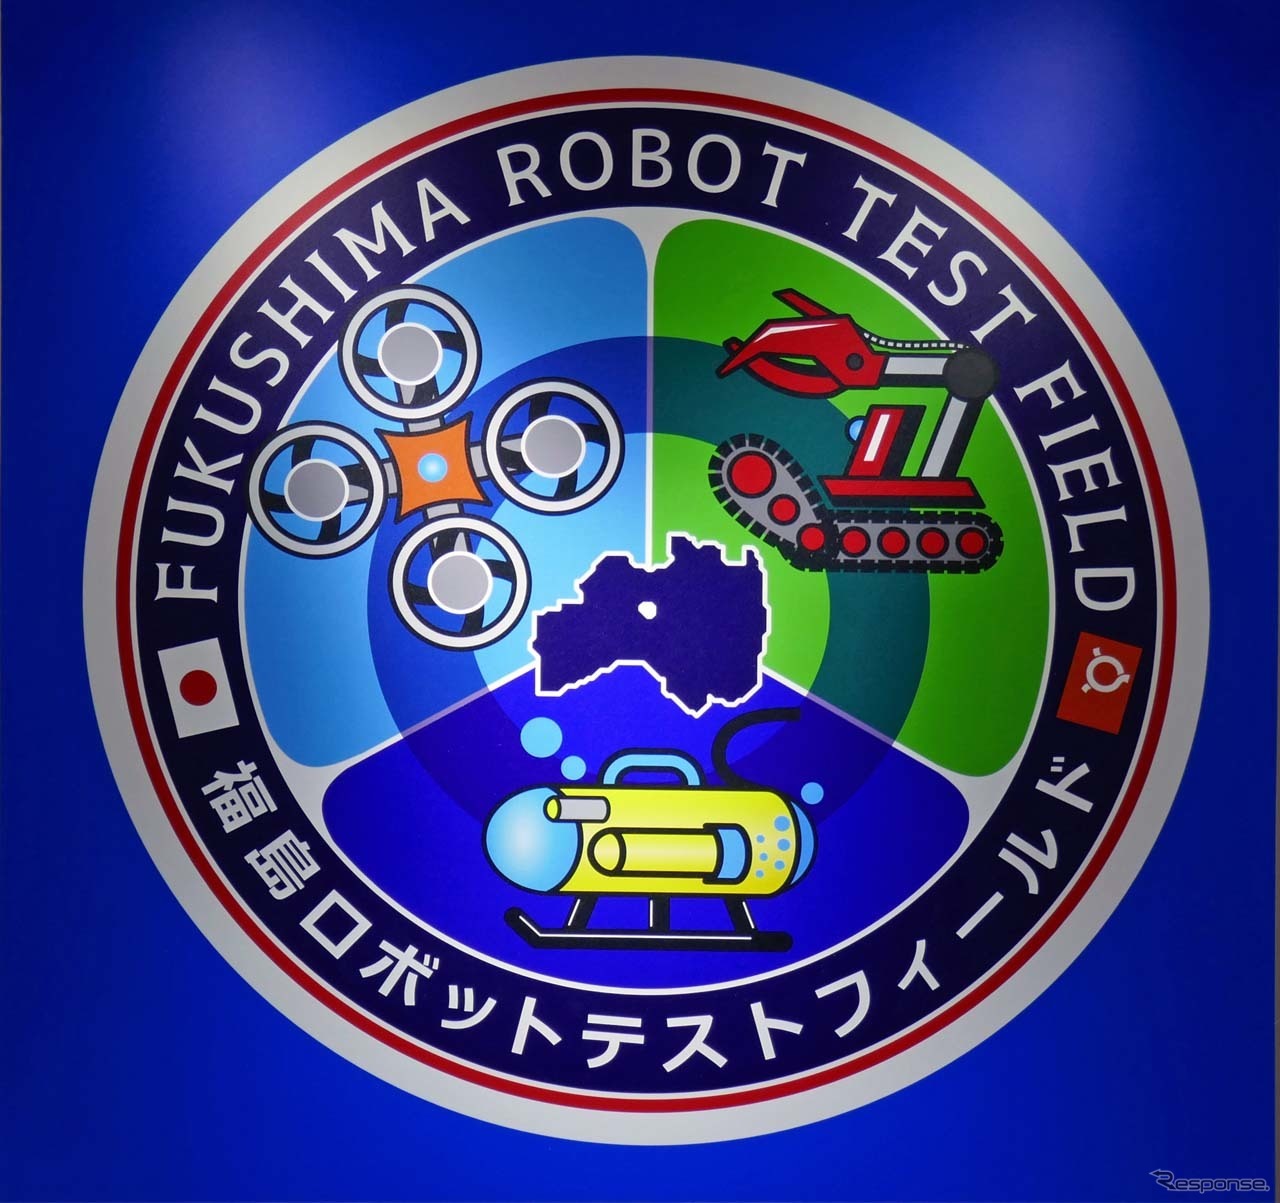 福島ロボットテストフィールド、“空飛ぶクルマ”の実験にも活用…フライングカーテクノロジー展